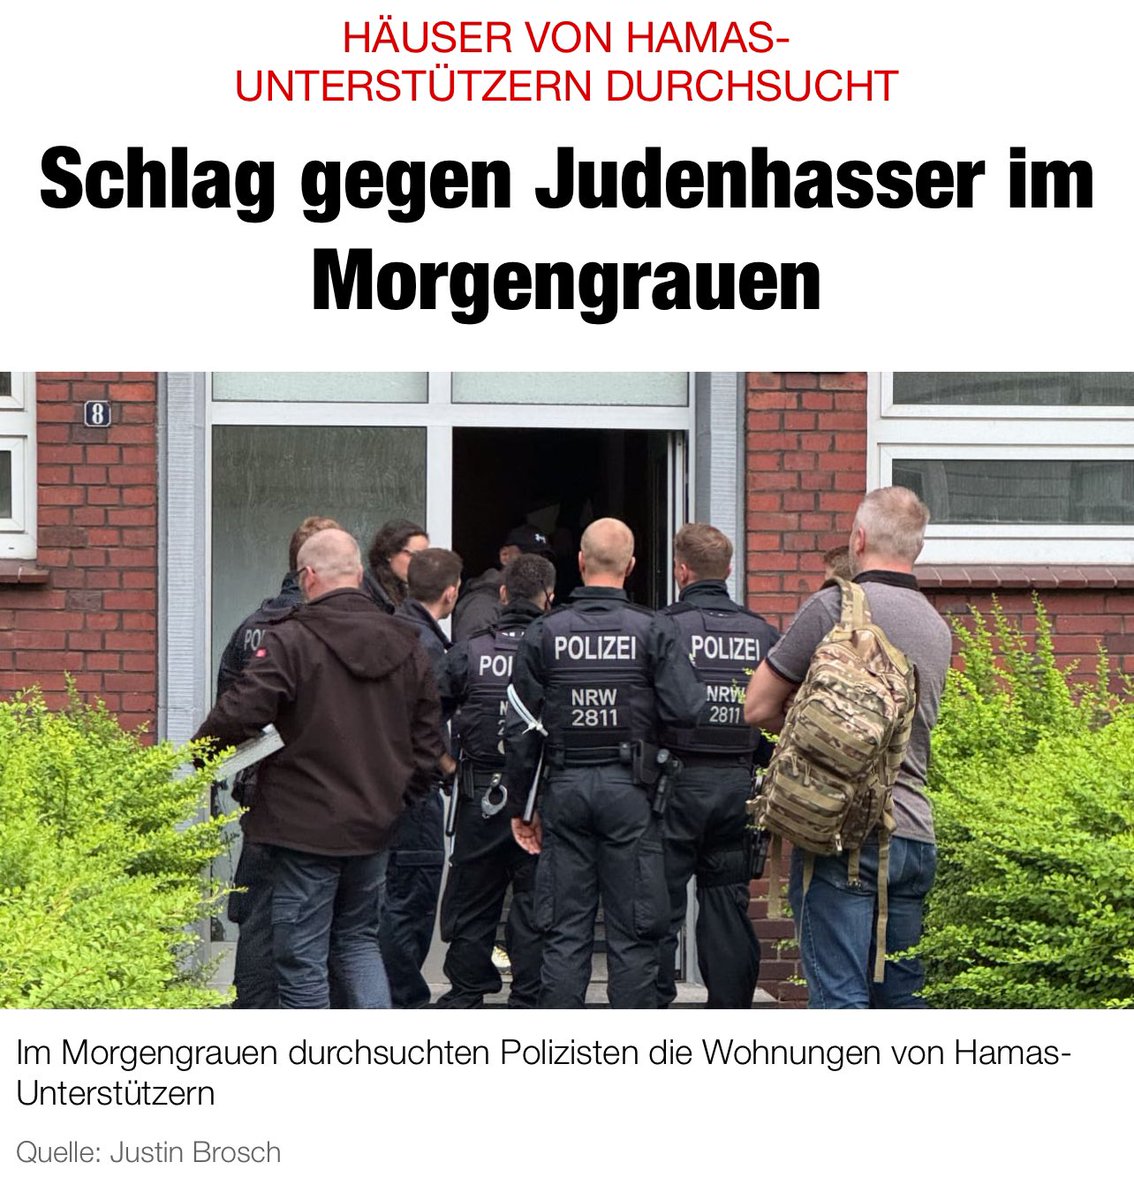 Na Samidoun ( die in 🇳🇱 wel hun gang mogen gaan), nog meer Free Palestina verenigingen in Duitsland verboden‼️

Om 6 uur vanmorgen bestormden politieagenten & staatsveiligheidsonderzoekers vier gebouwen in Duisburg. De reden: minister BZ van NRW heeft “Palestina Solidariteit